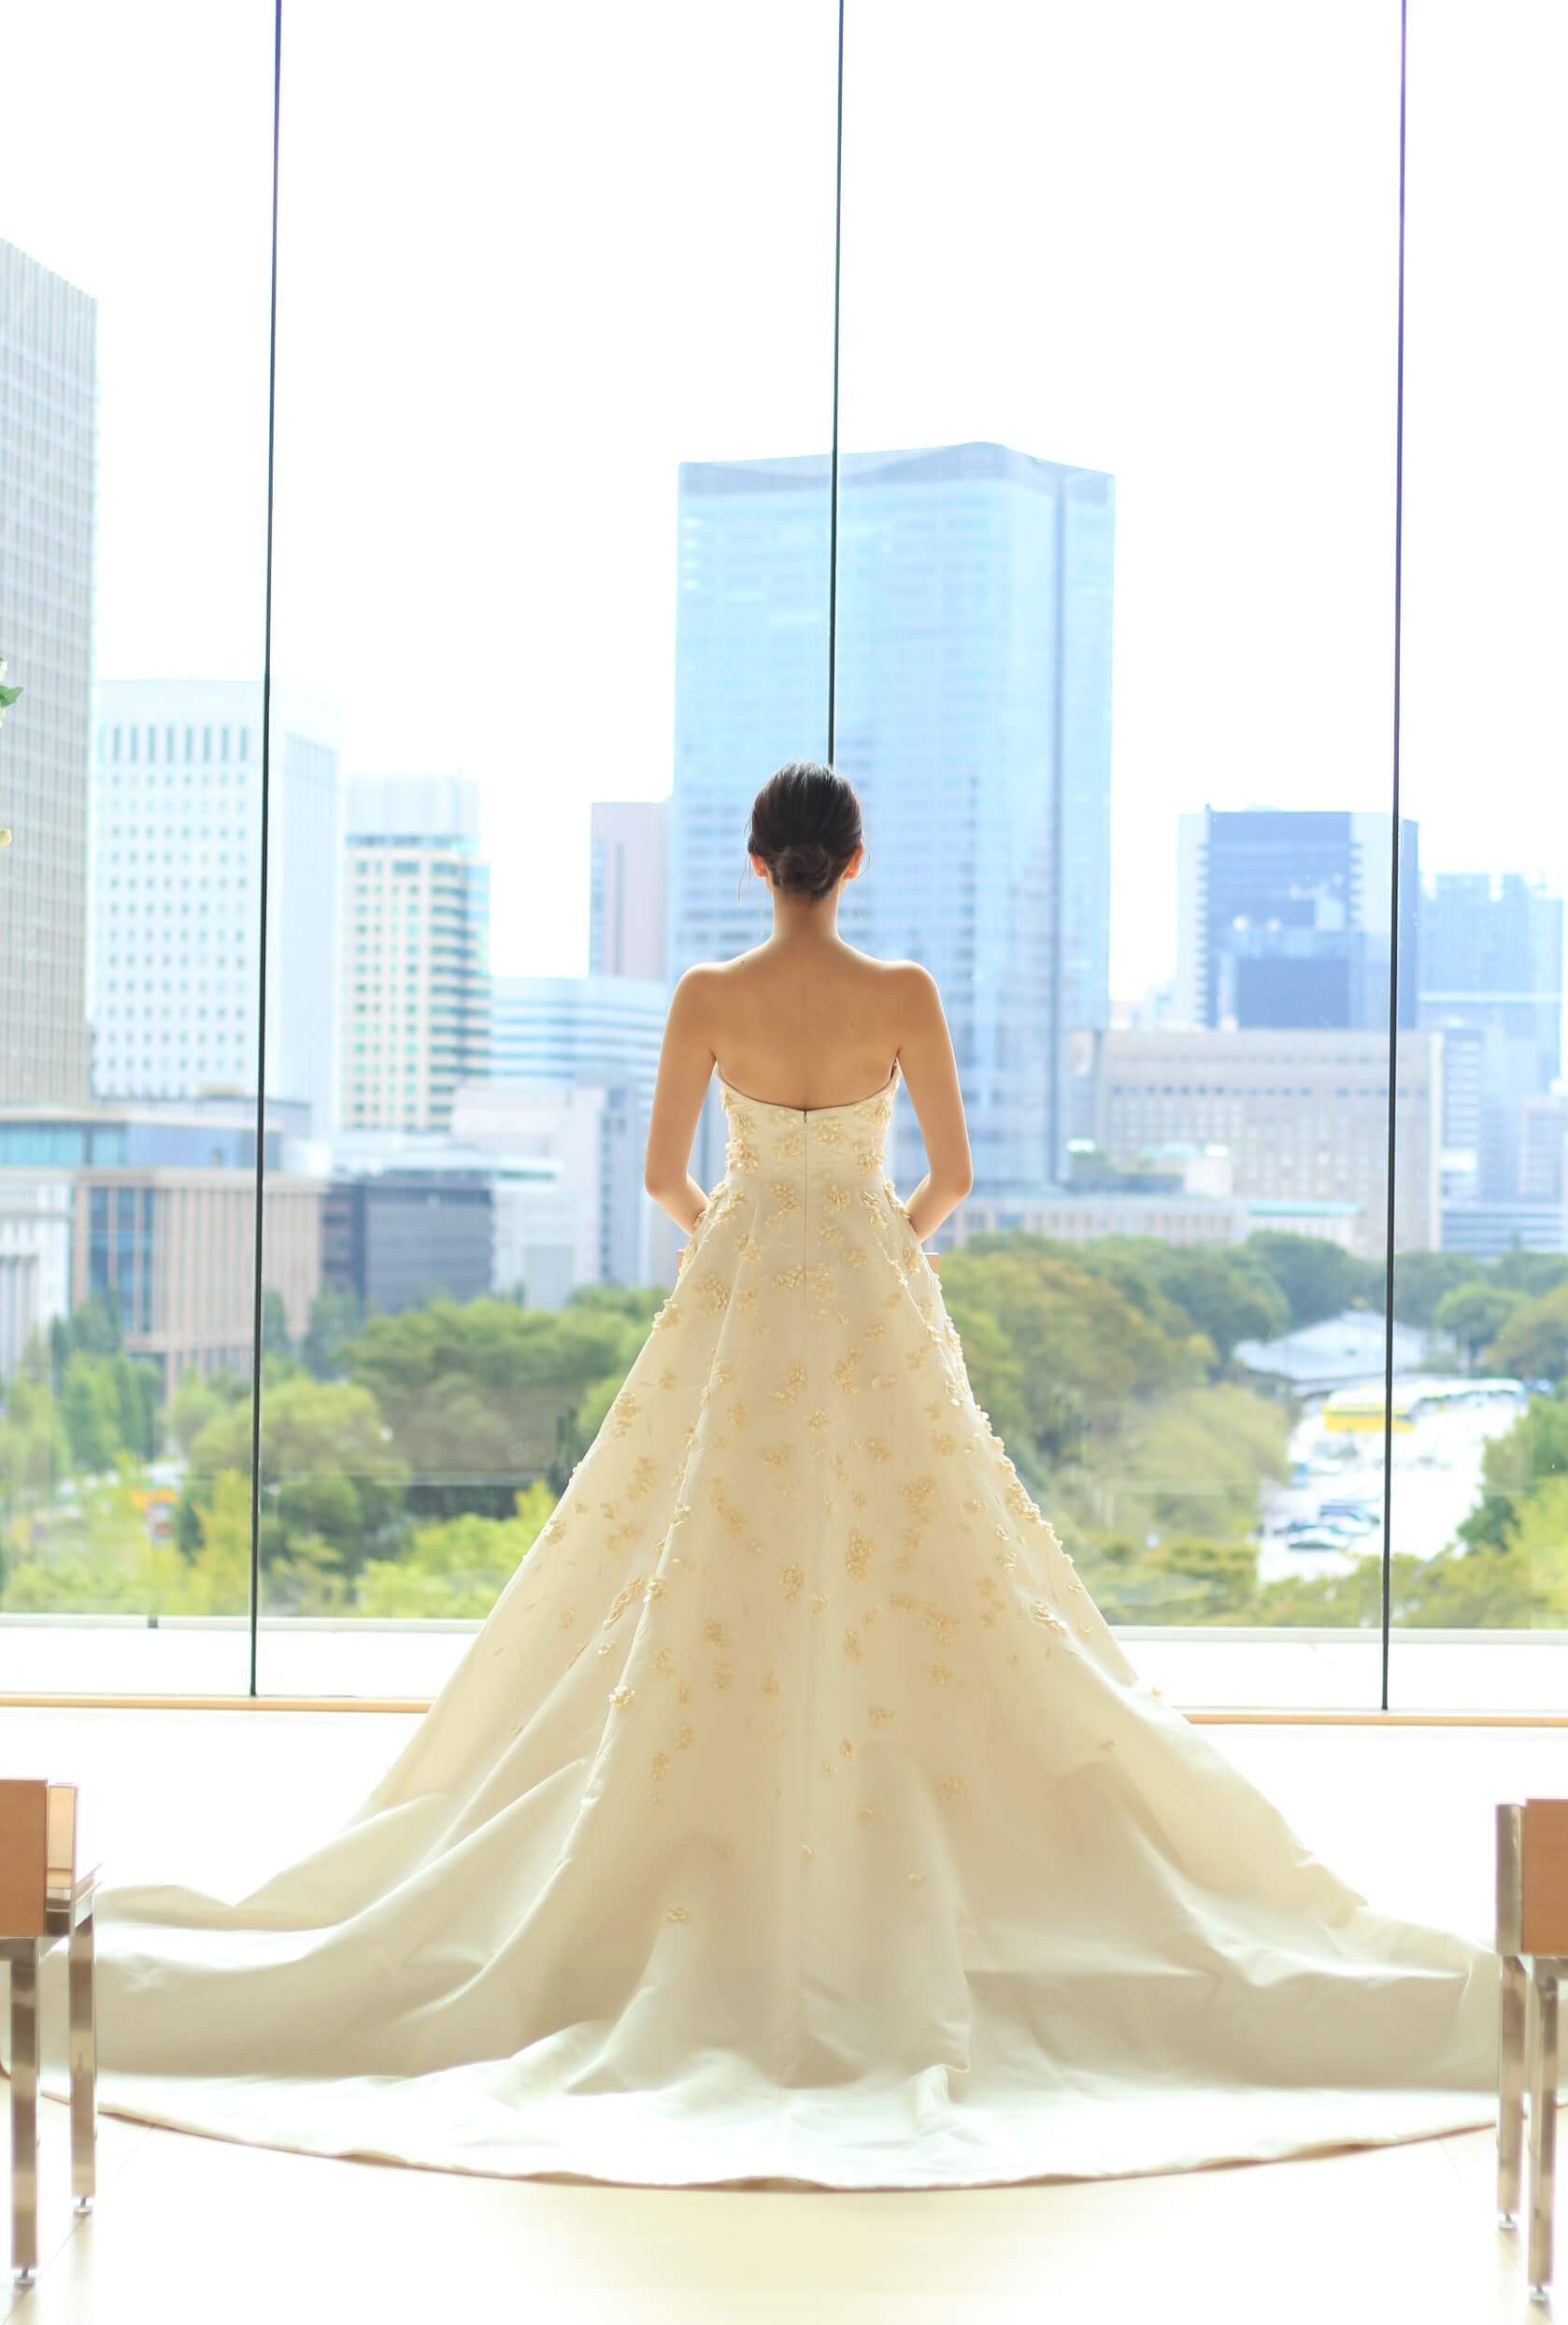 パレスホテル東京のチャペルに写真映えするトレーン長めのウエディングドレス